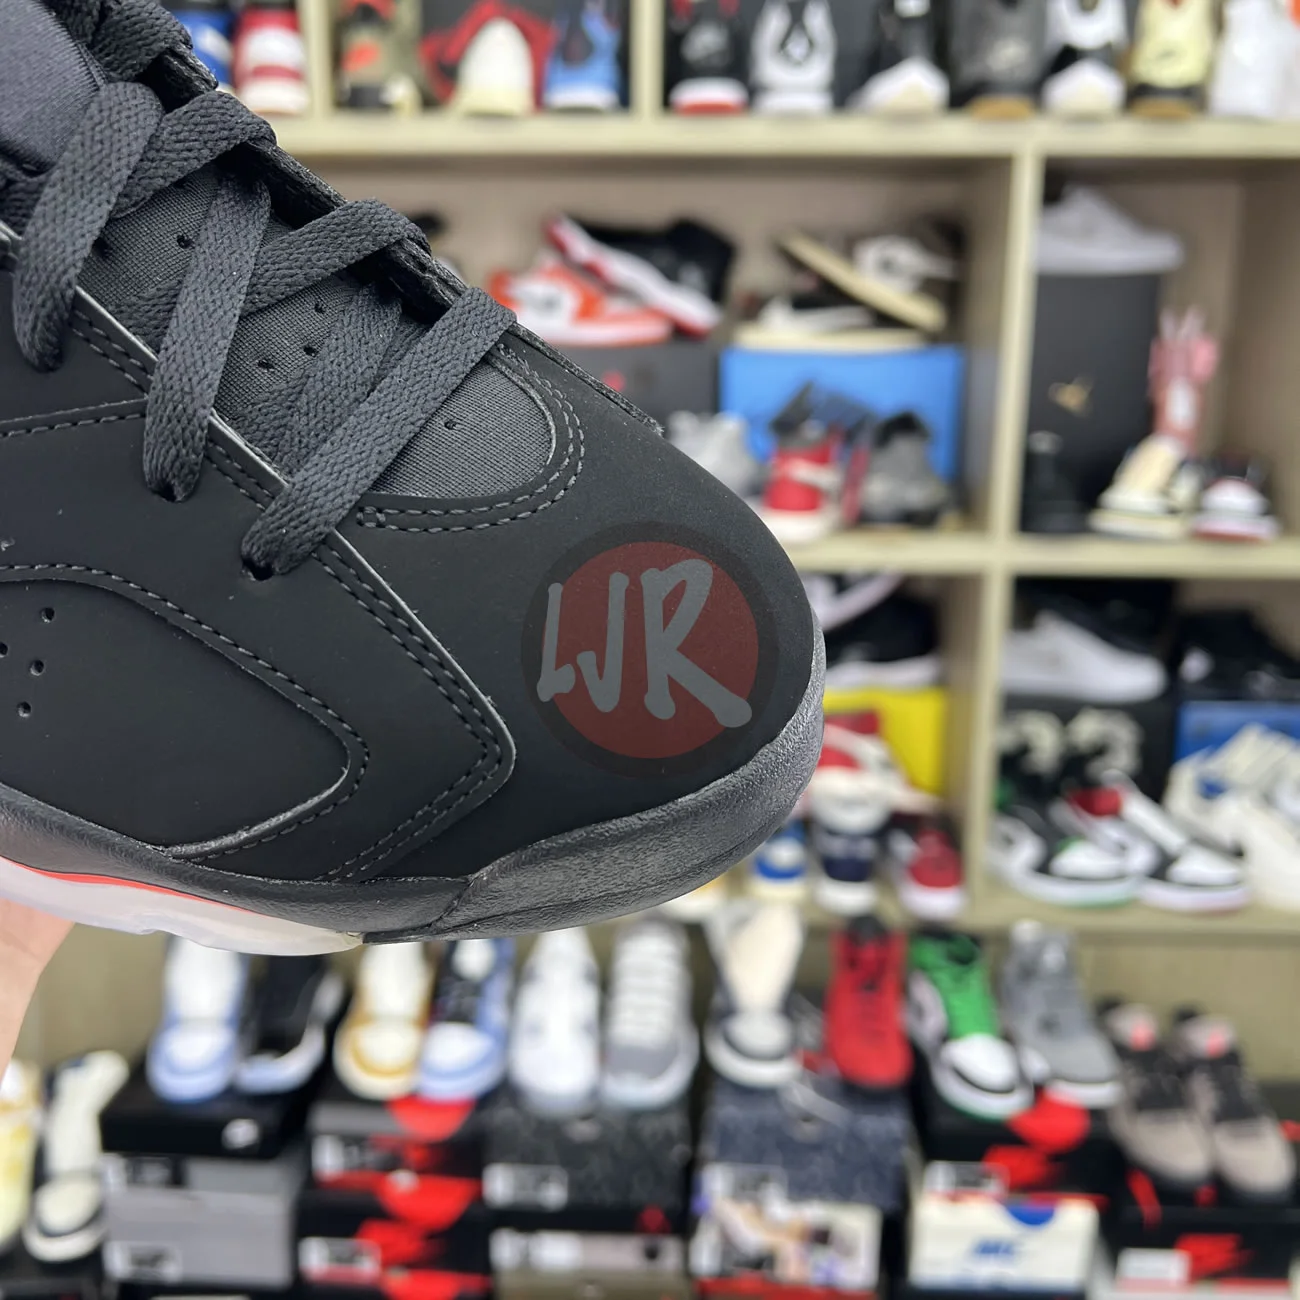 Air Jordan 6 Retro Black Infrared 2019 384664 060 Ljr Sneakers (5) - bc-ljr.net